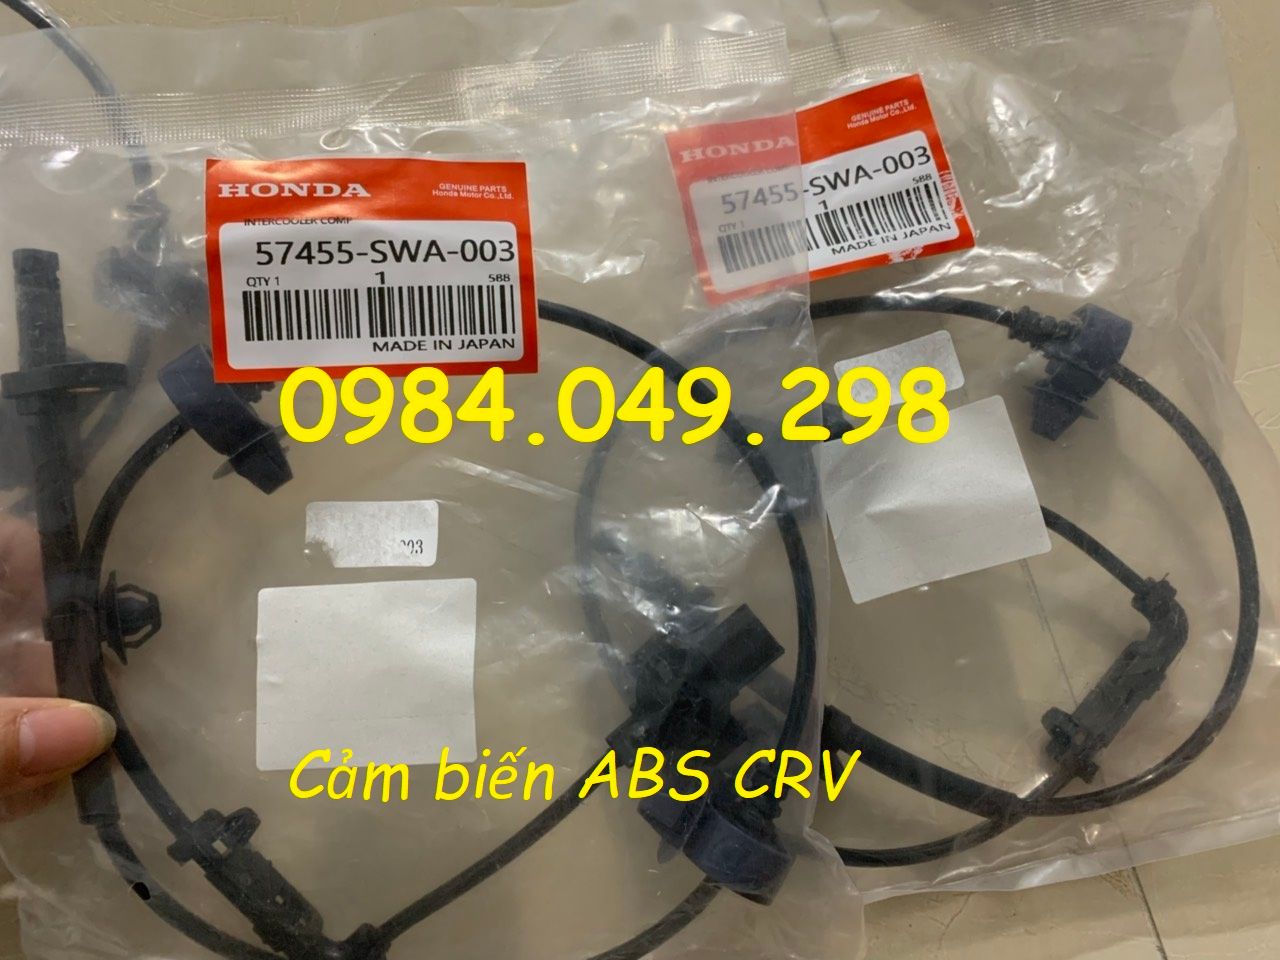 Cảm biến ABS trước - sau Honda CRV 2007-2012 nhập khẩu chính hãng. Tel: 0984.049.298